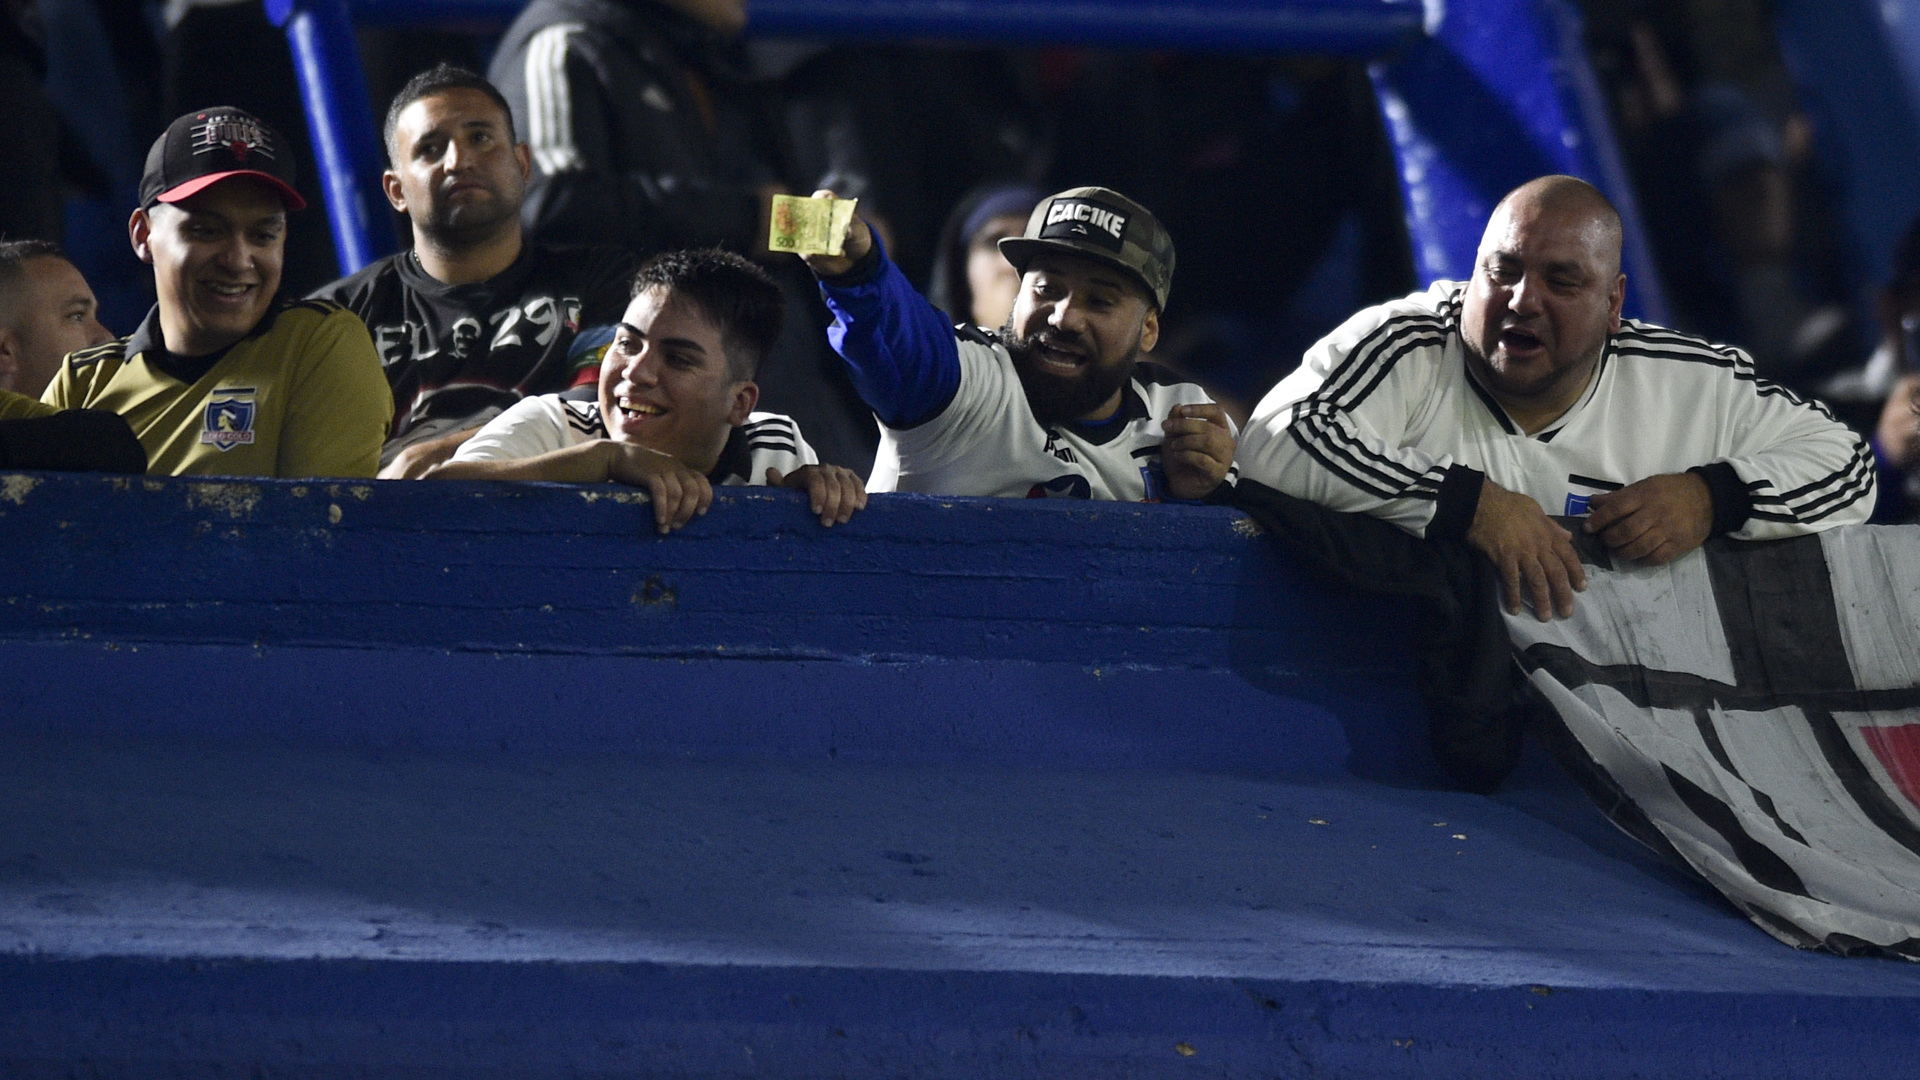 Суперкубок Чили по футболу был прерван из-за конфликта фанатов и полиции